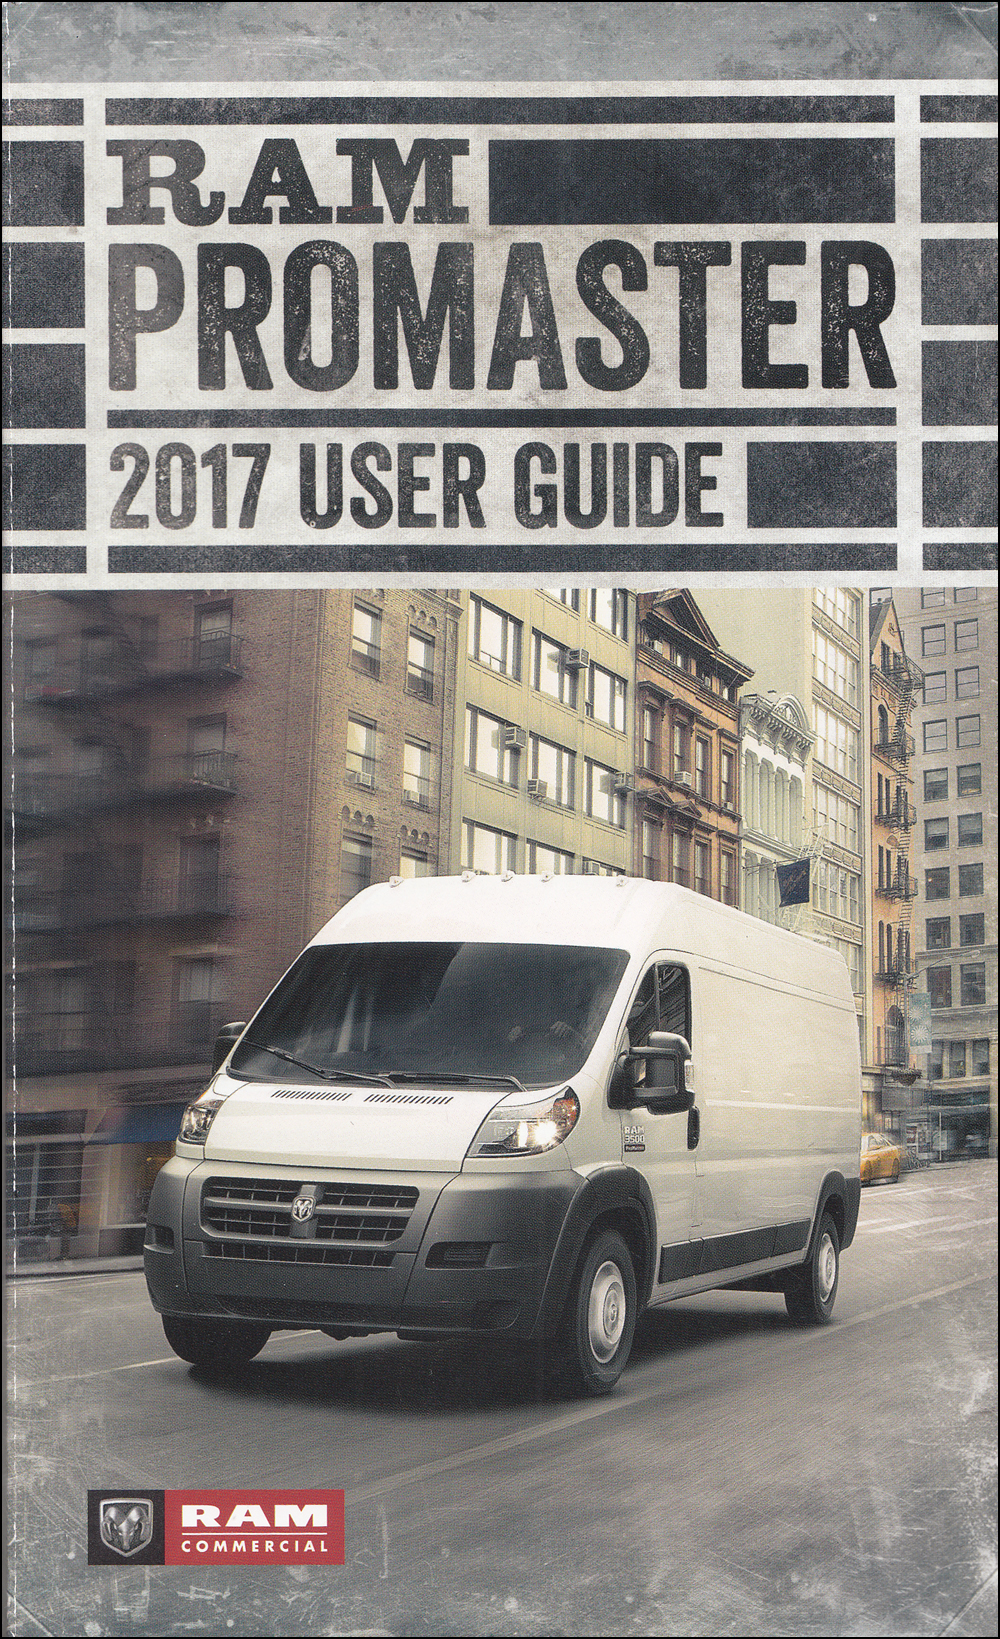 2017 Ram Promaster User Guide Owner's Manual Original